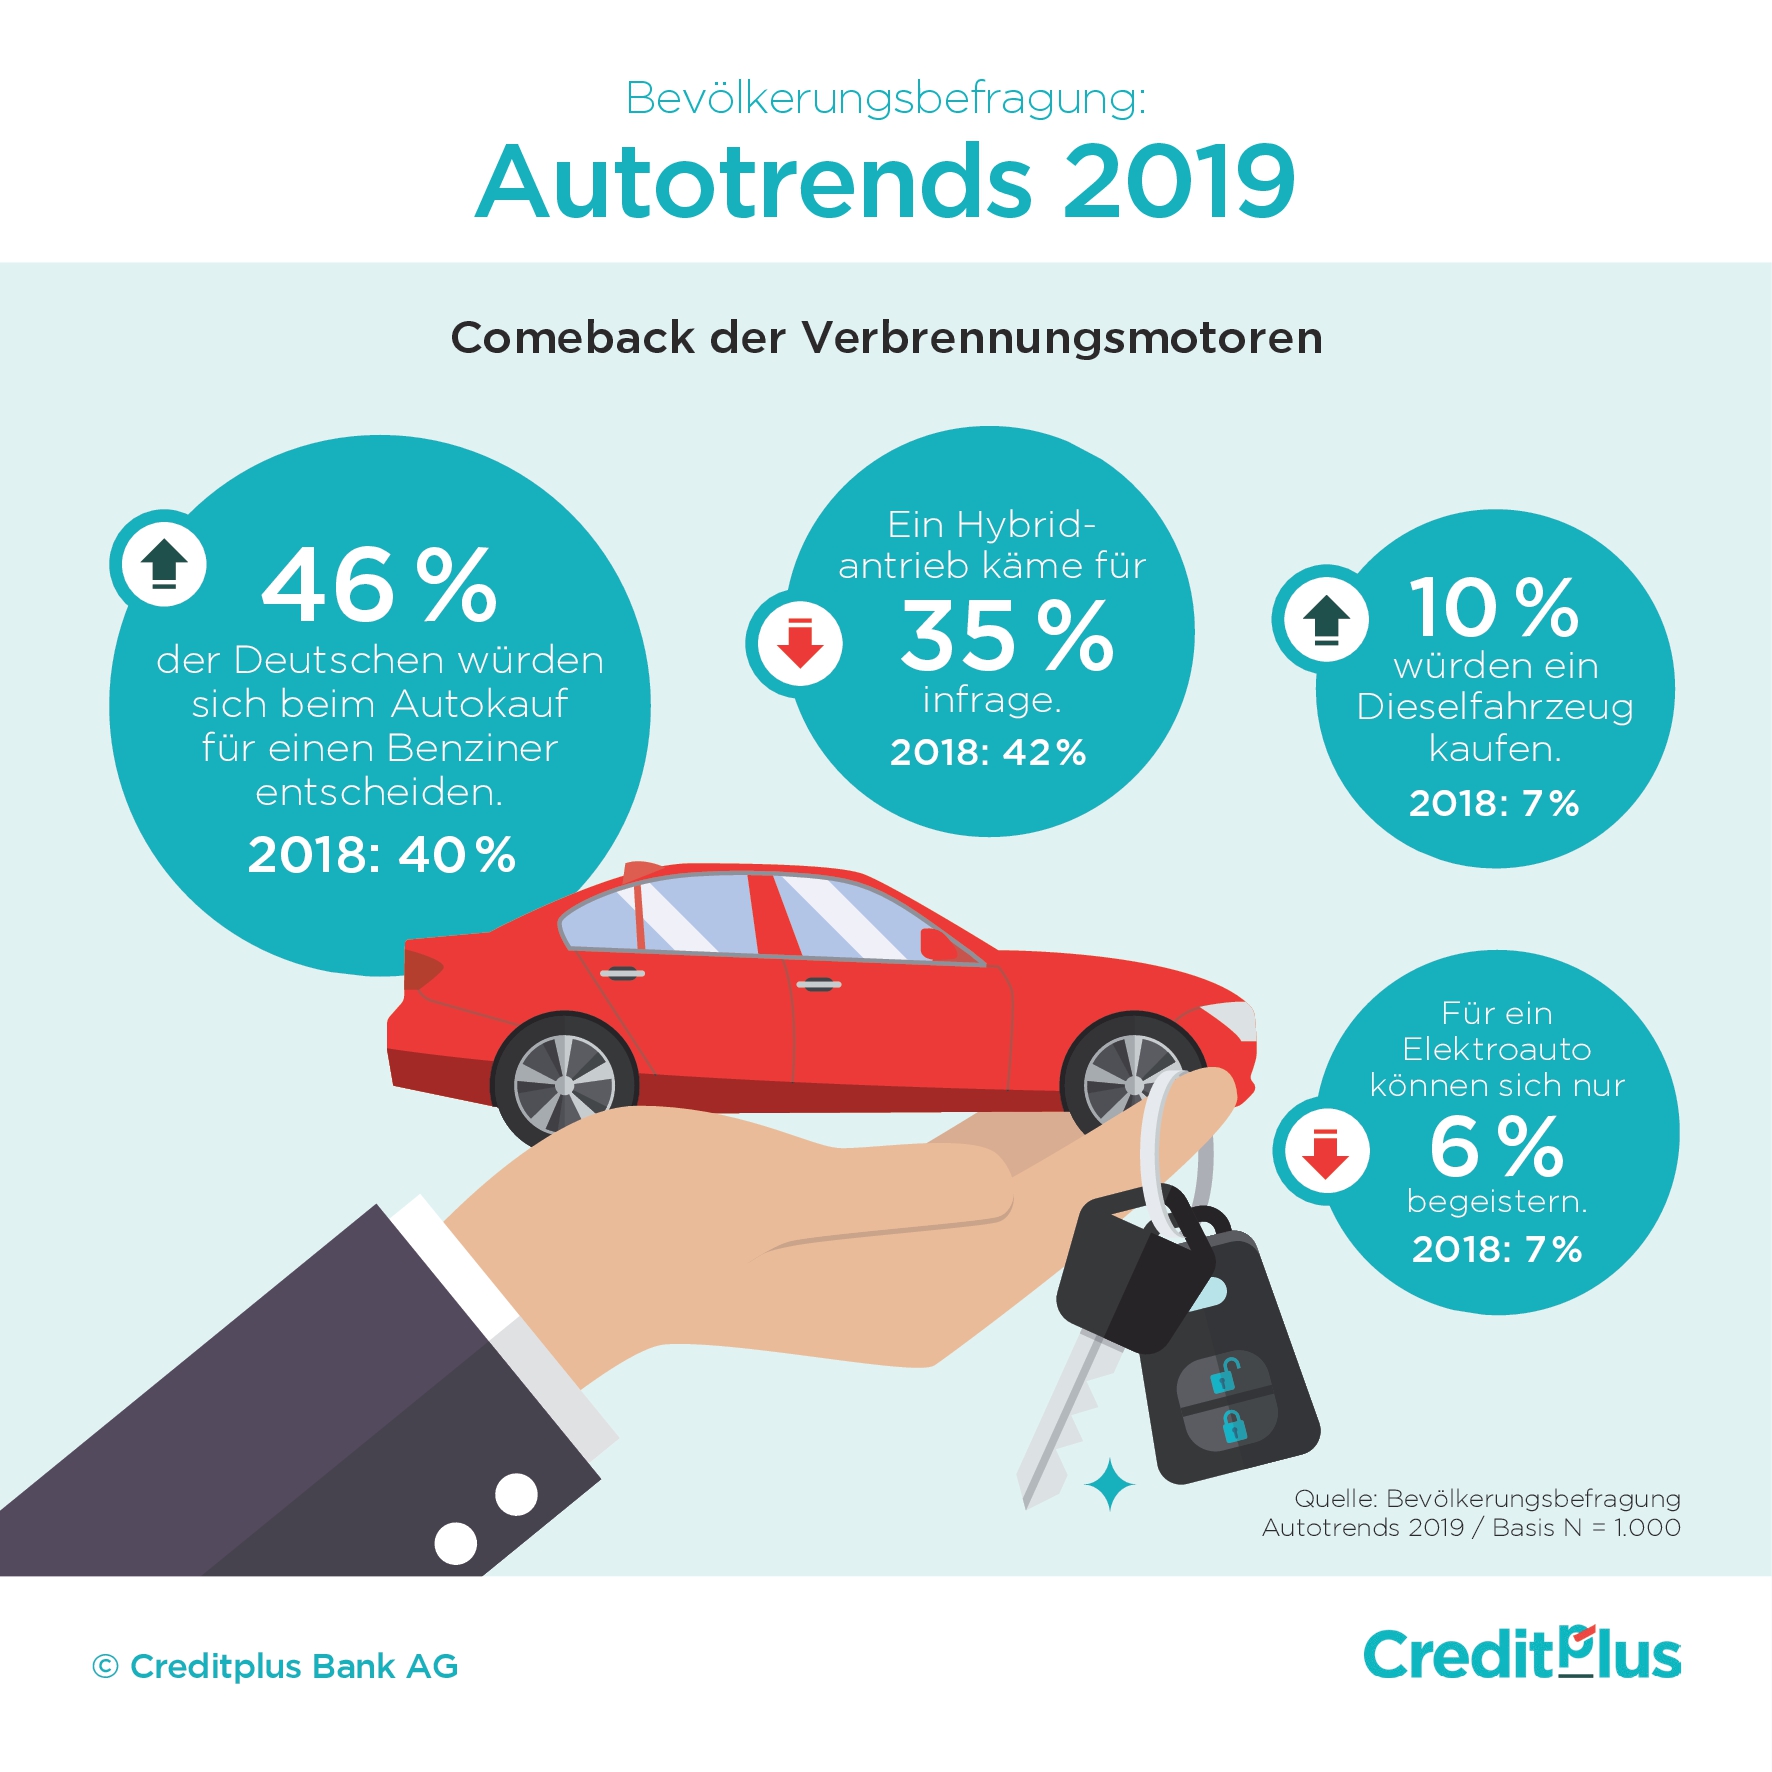 Creditplus Autotrends 2019